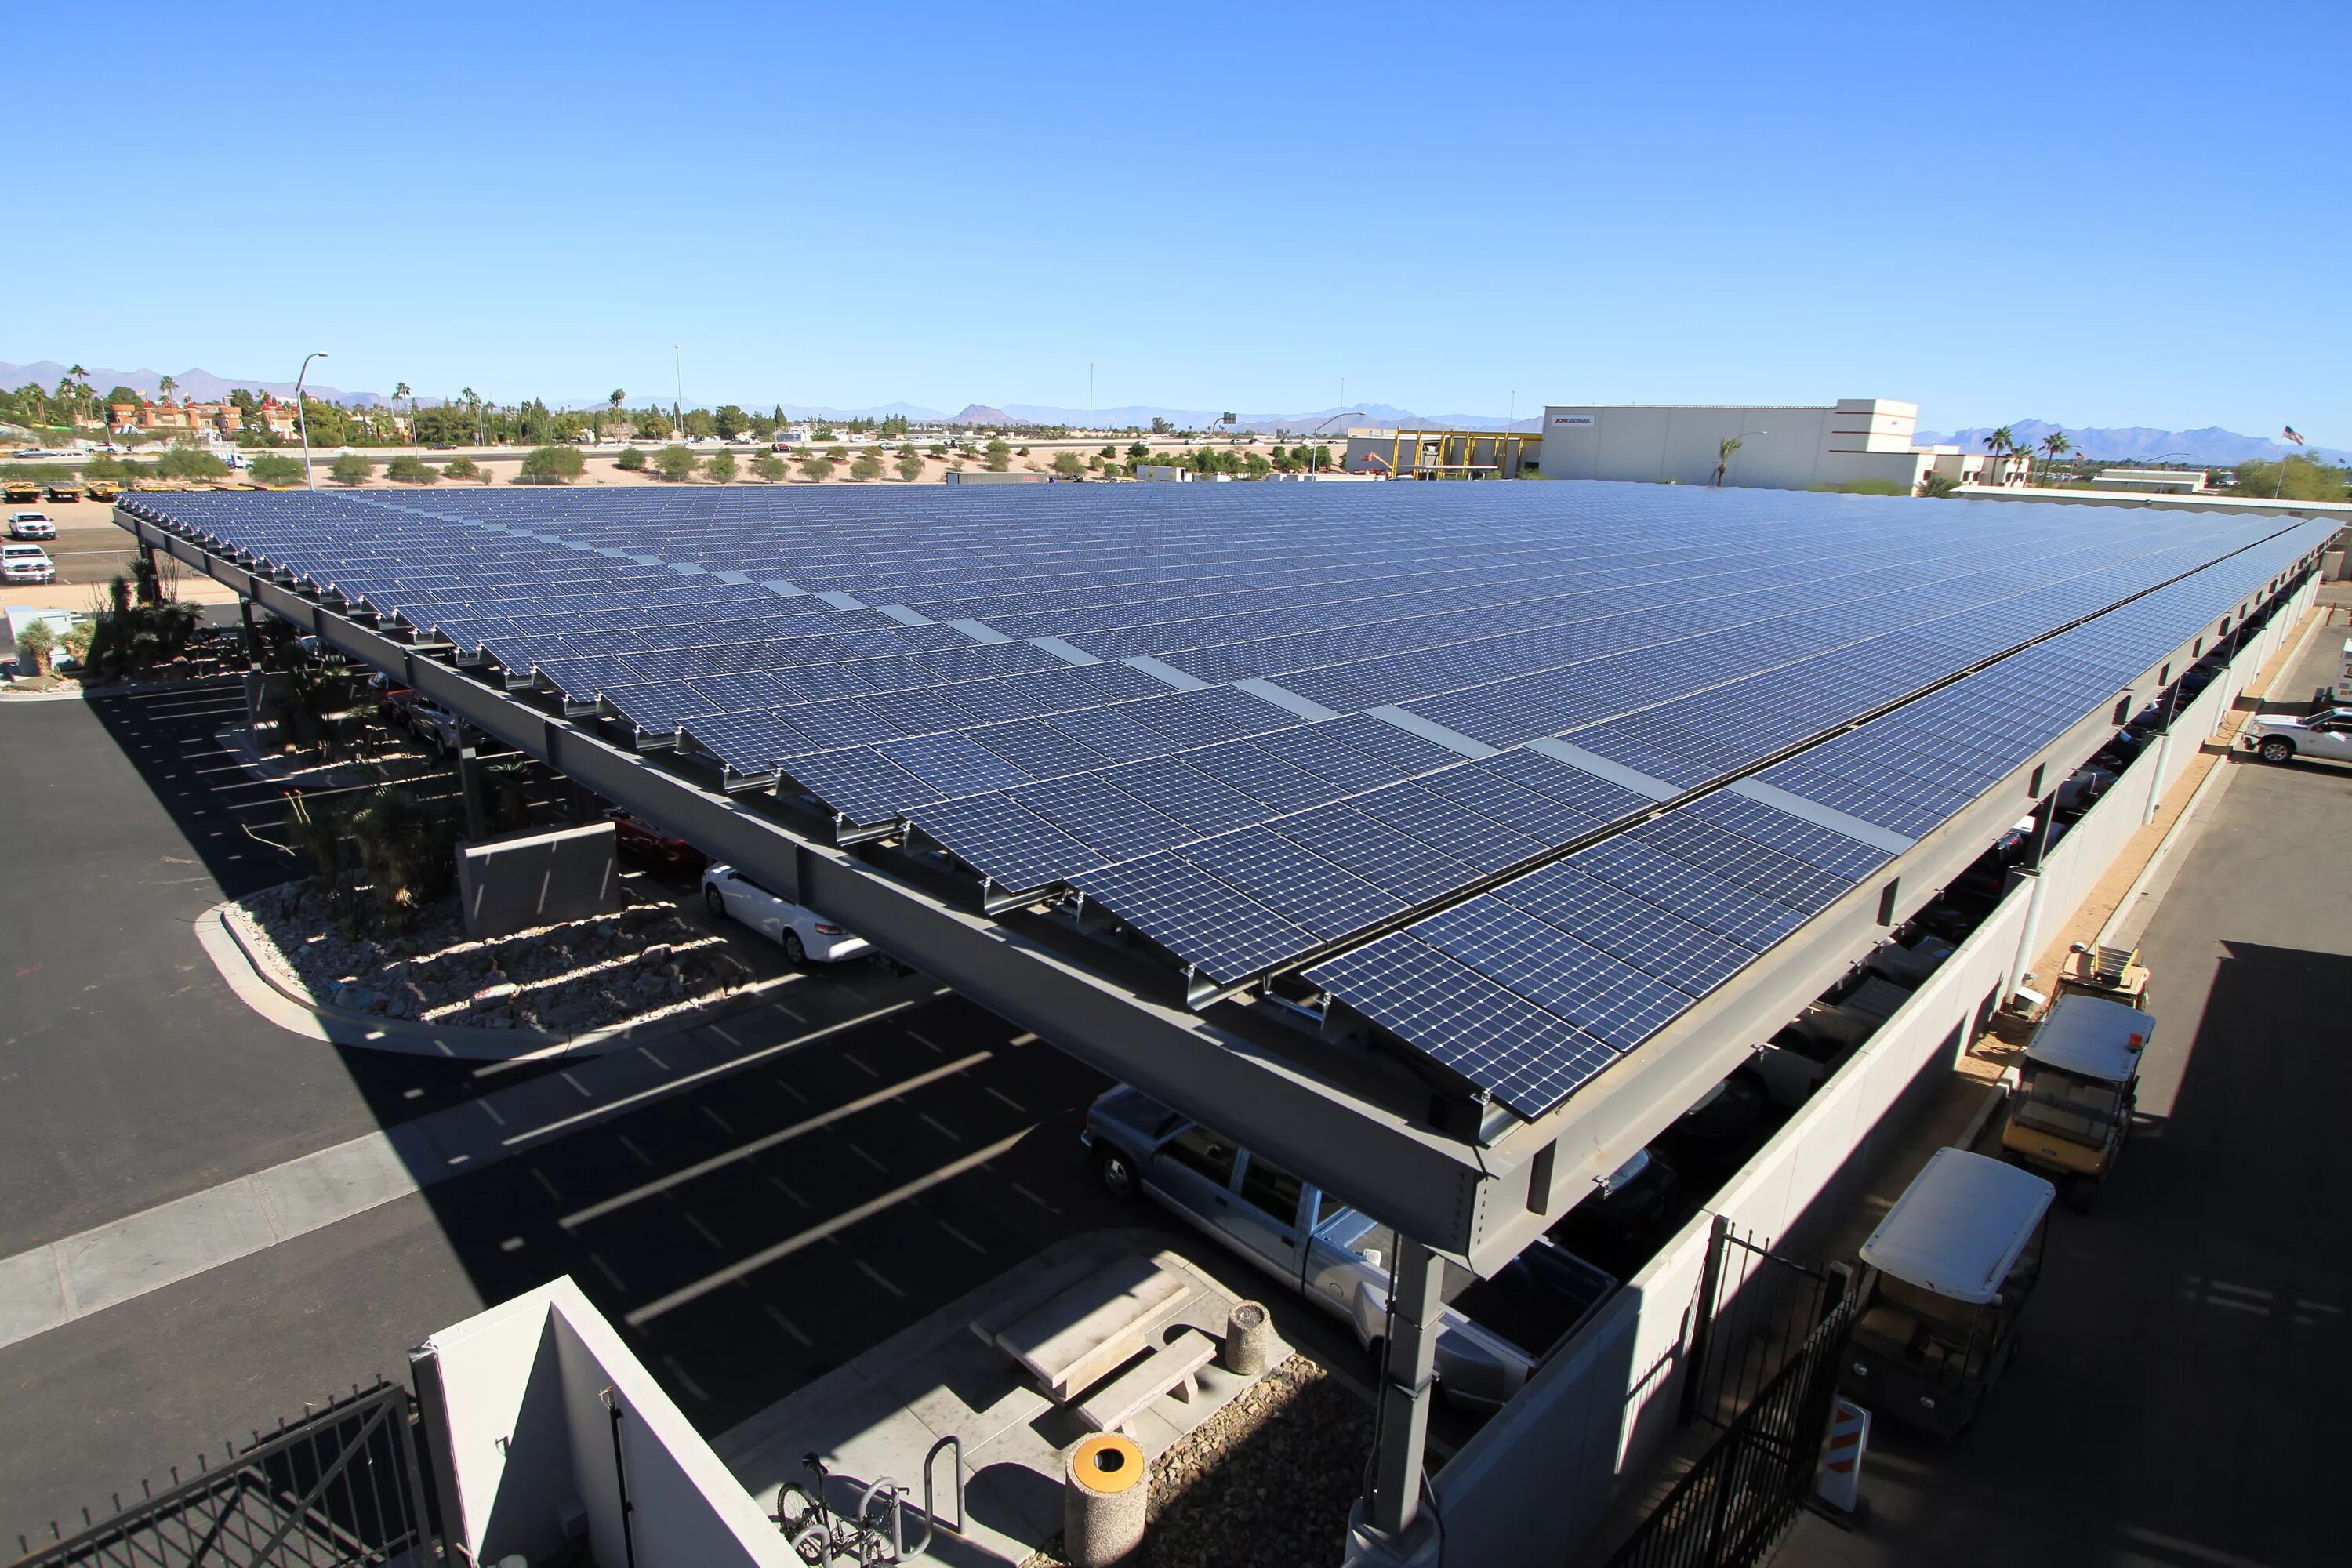 Solar PV Panel. Солнечные панели. Солнечные батареи на крыше здания. Солнечные панели в сельском хозяйстве.